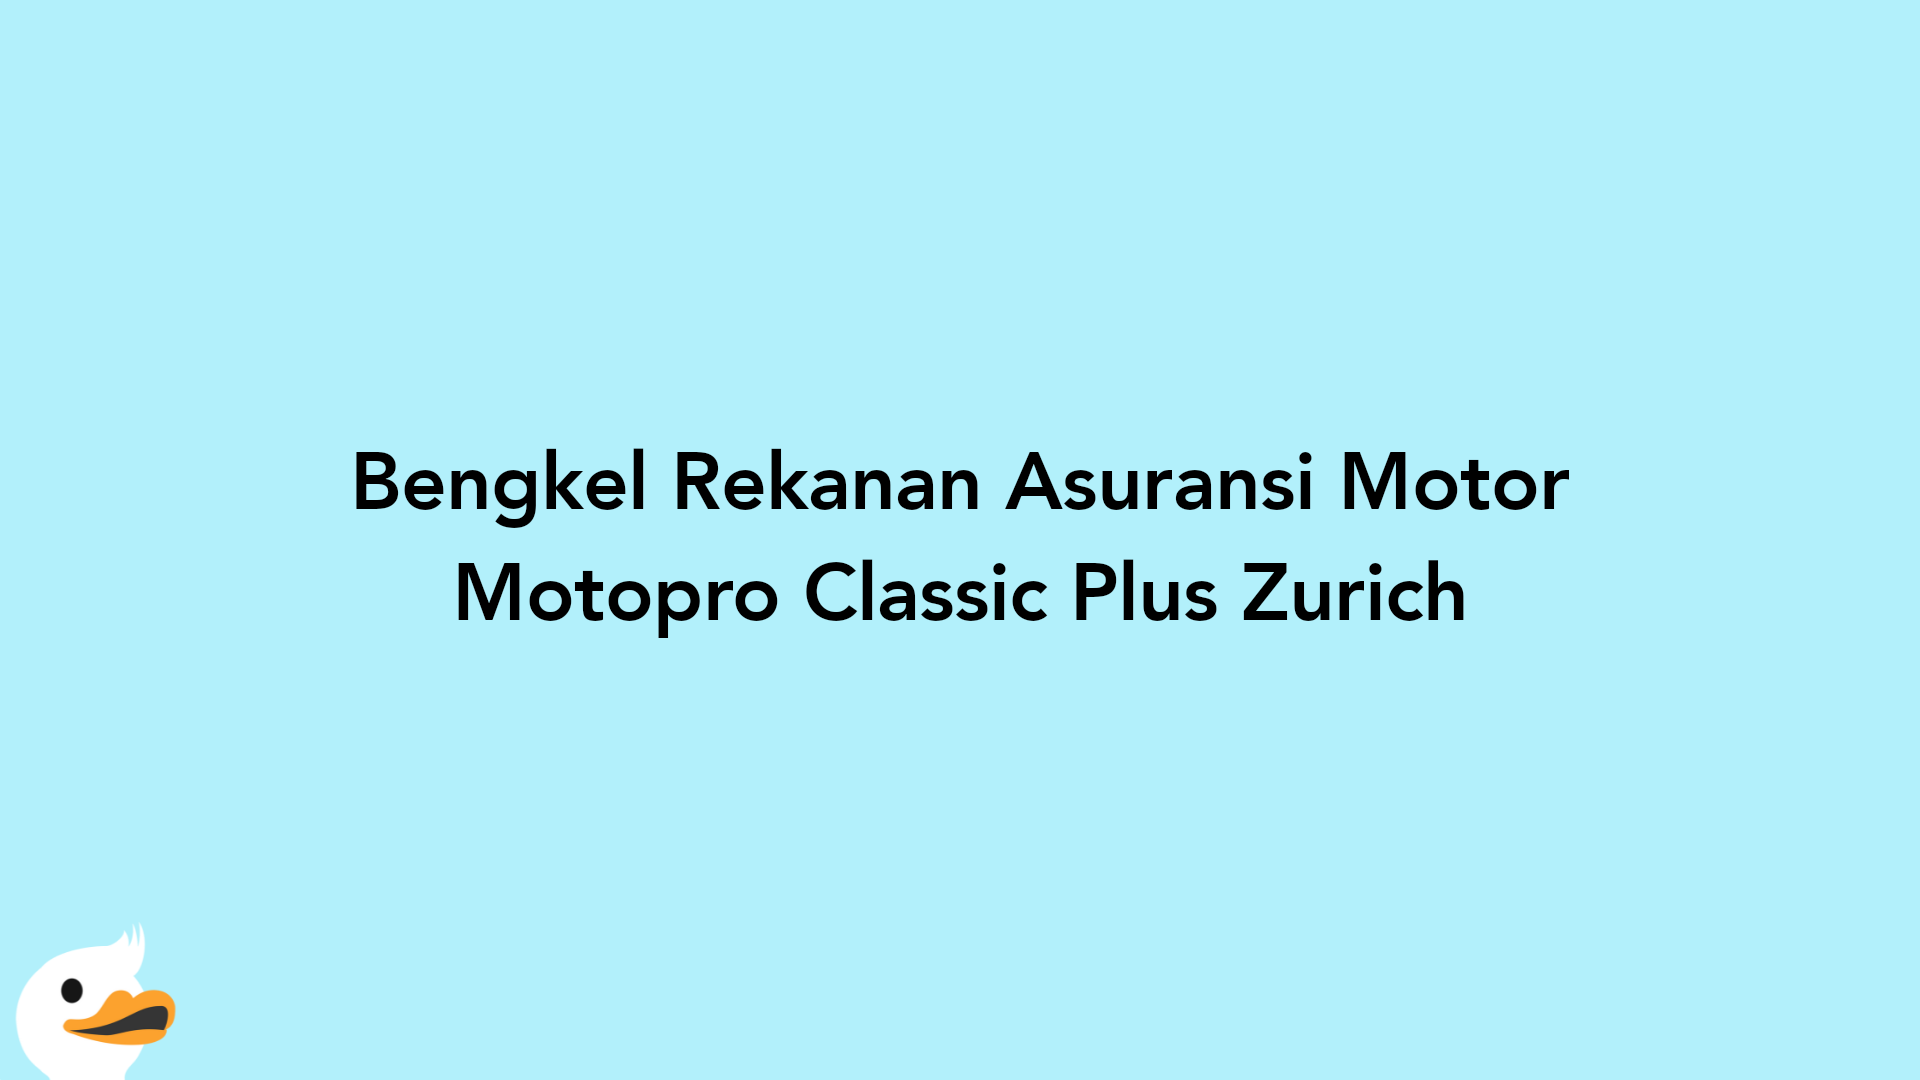 Bengkel Rekanan Asuransi Motor Motopro Classic Plus Zurich